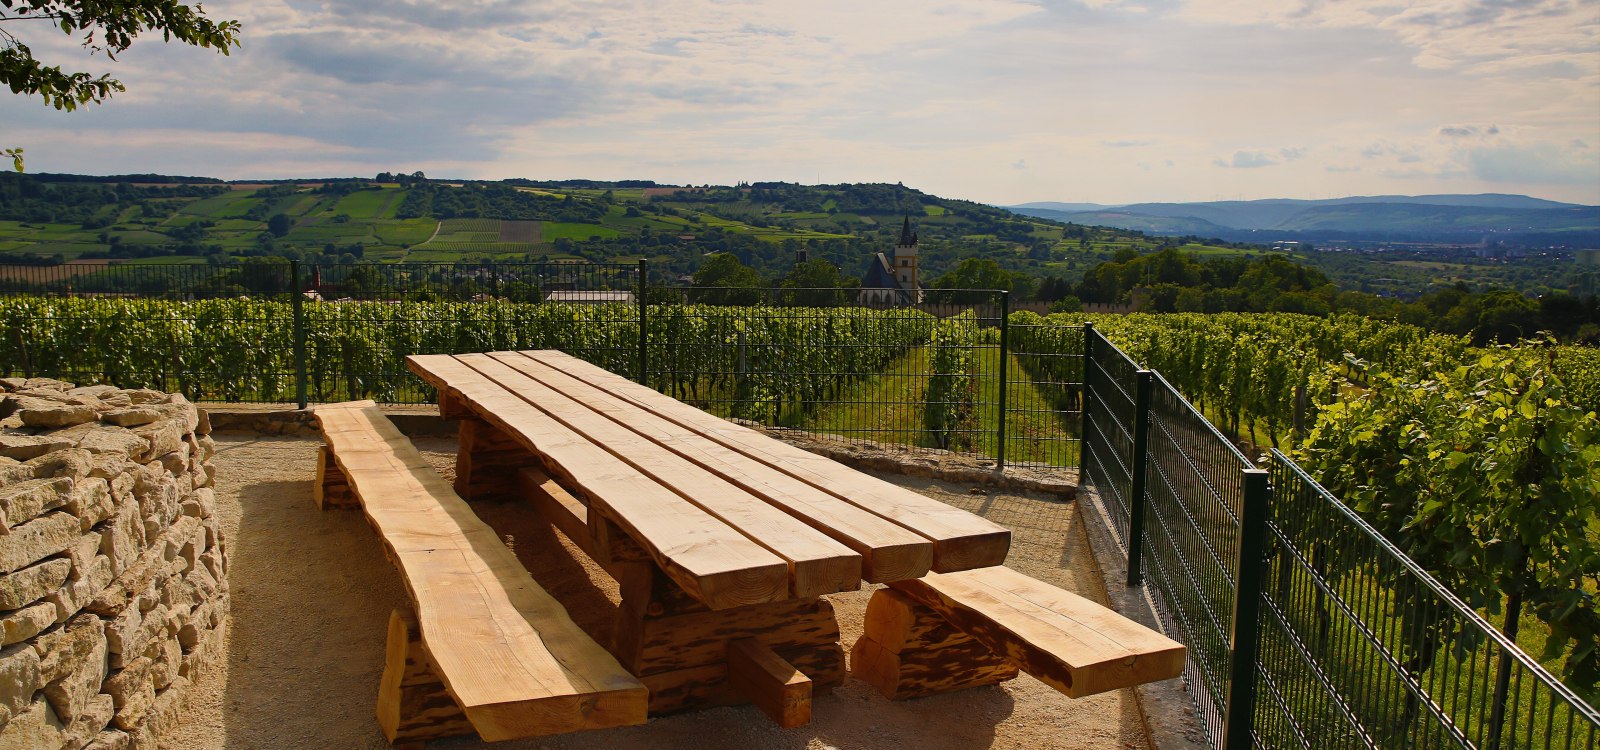 Eine kleine Rast am Tisch des Weines und dabei den herrlichen Panoramablick genießen., © Rainer Oppenheimer